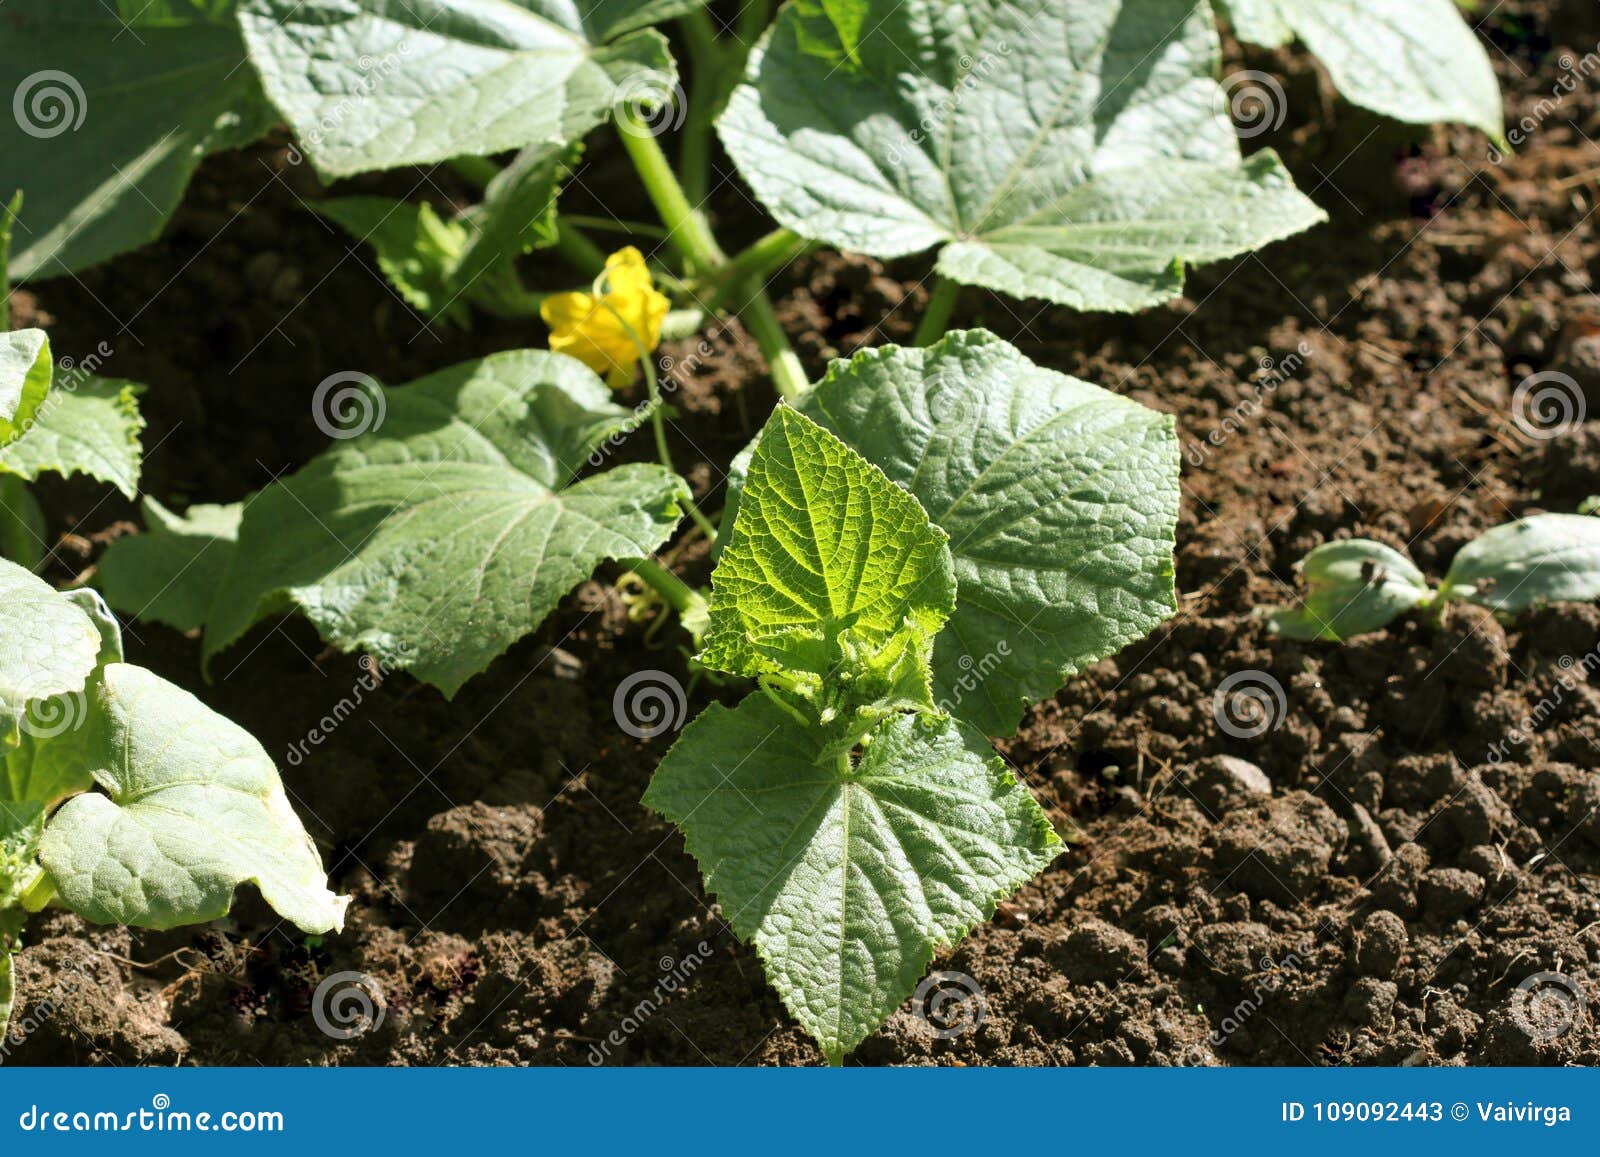 黄瓜-黄石植物-图片